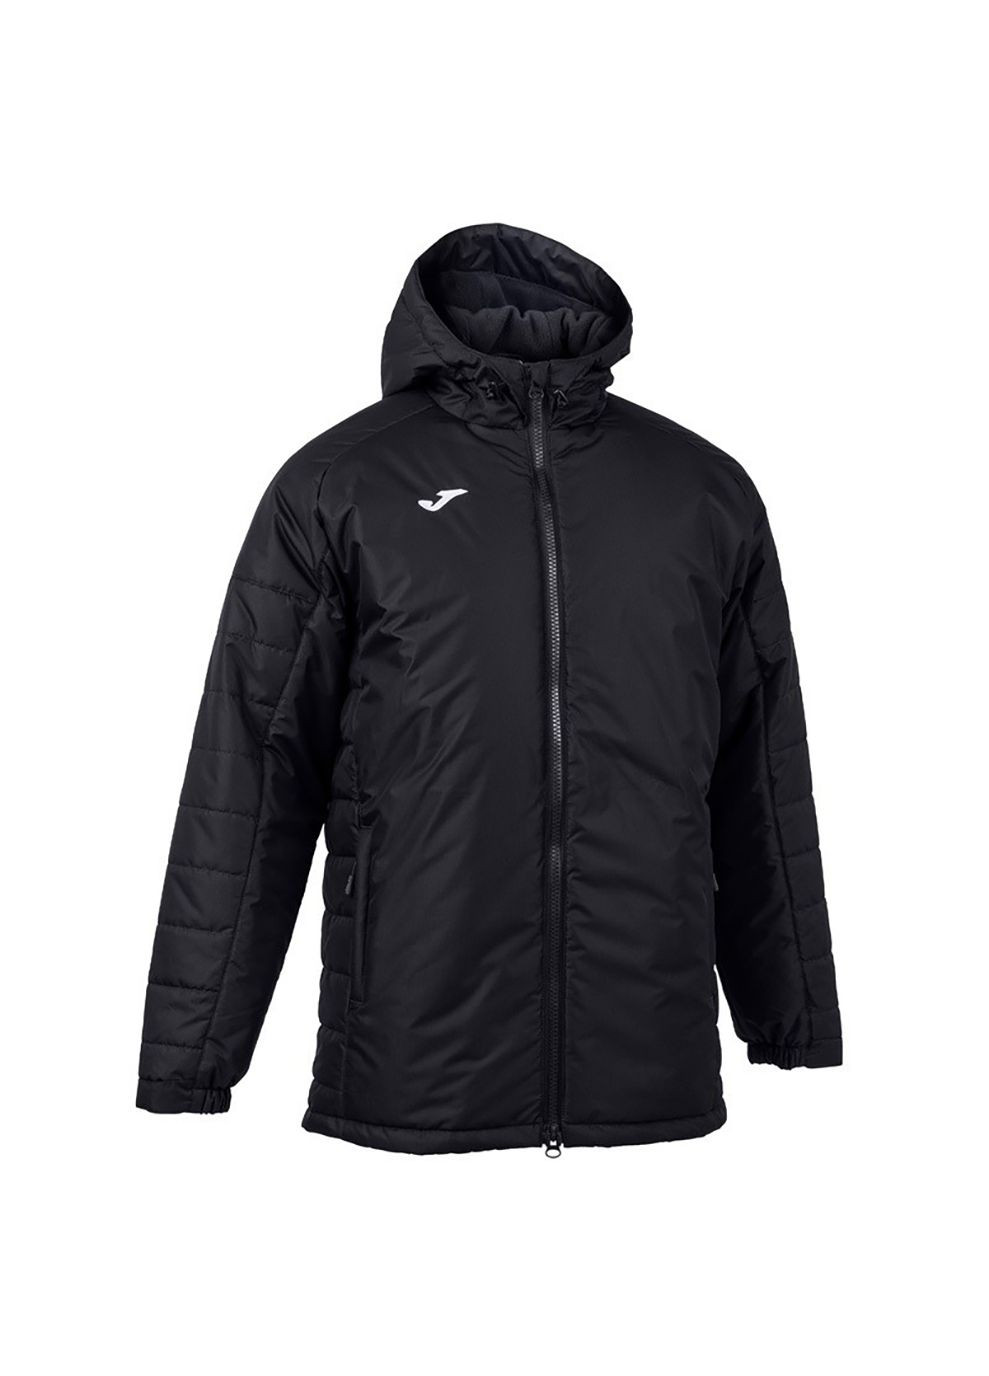 Черная зимняя куртка мужская cervino polar anorak black черный Joma